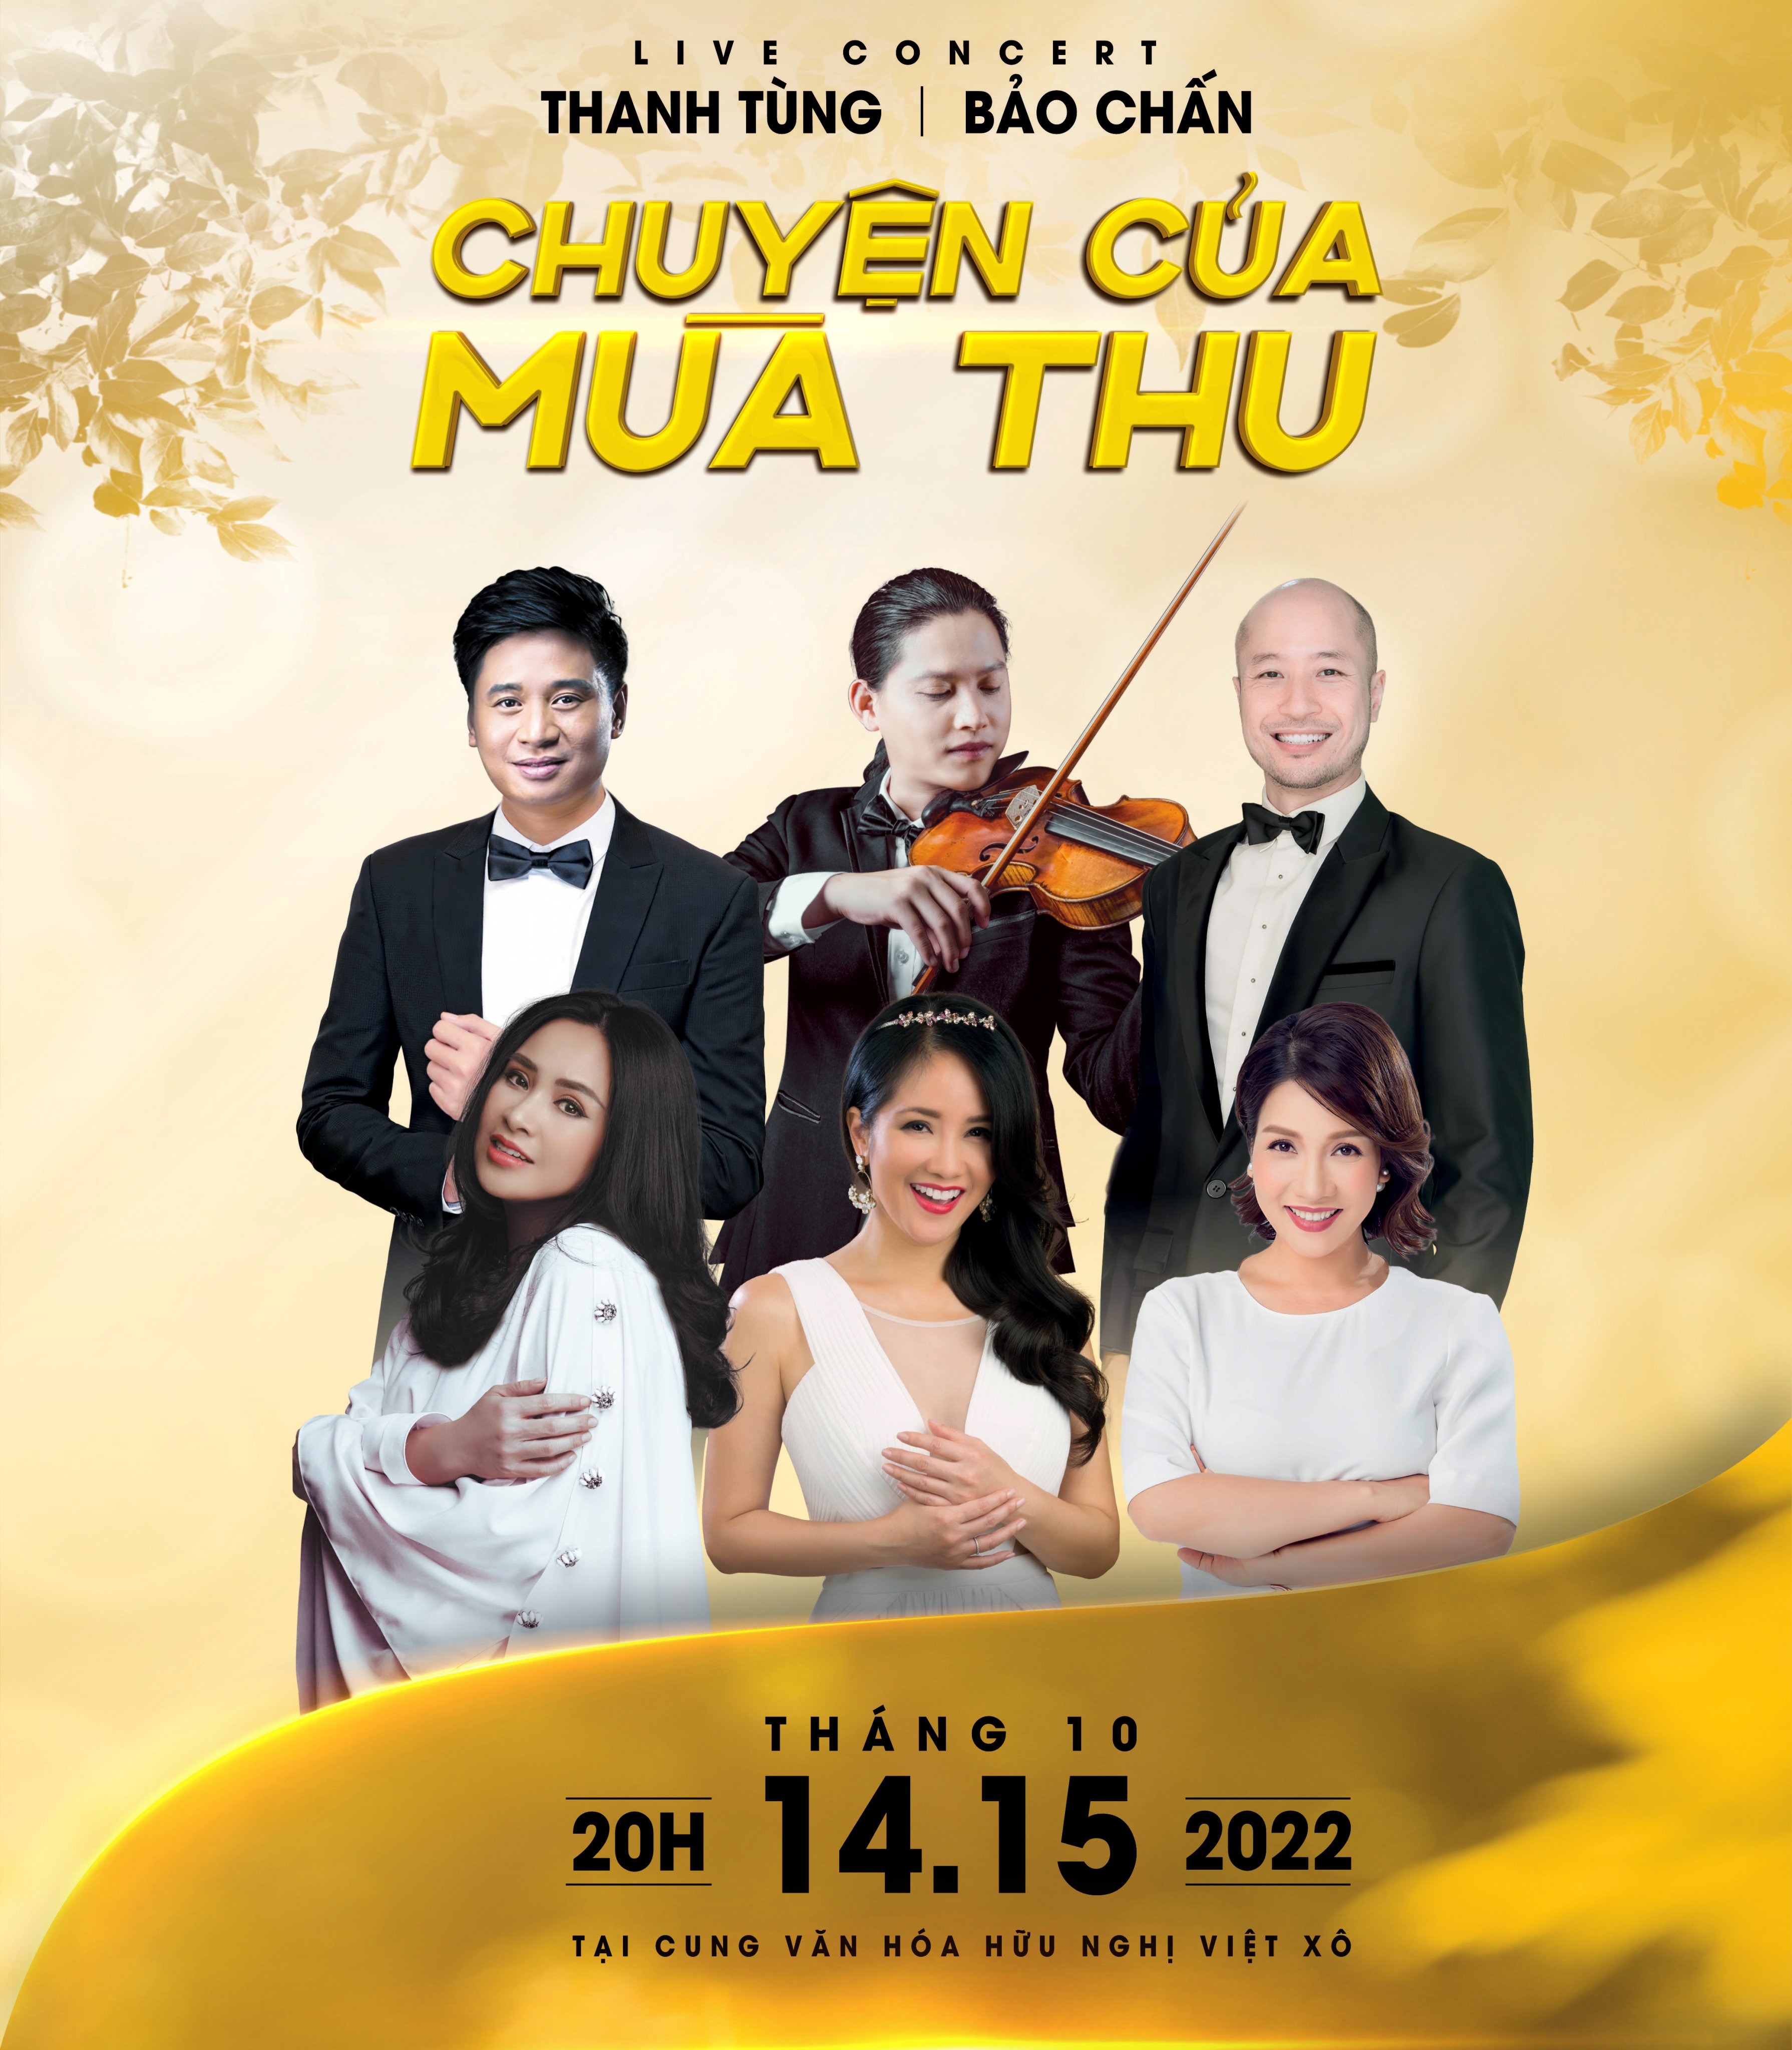 Ba diva Mỹ Linh, Thanh Lam, Hồng Nhung hội ngộ hát nhạc Thanh Tùng - Bảo Chấn